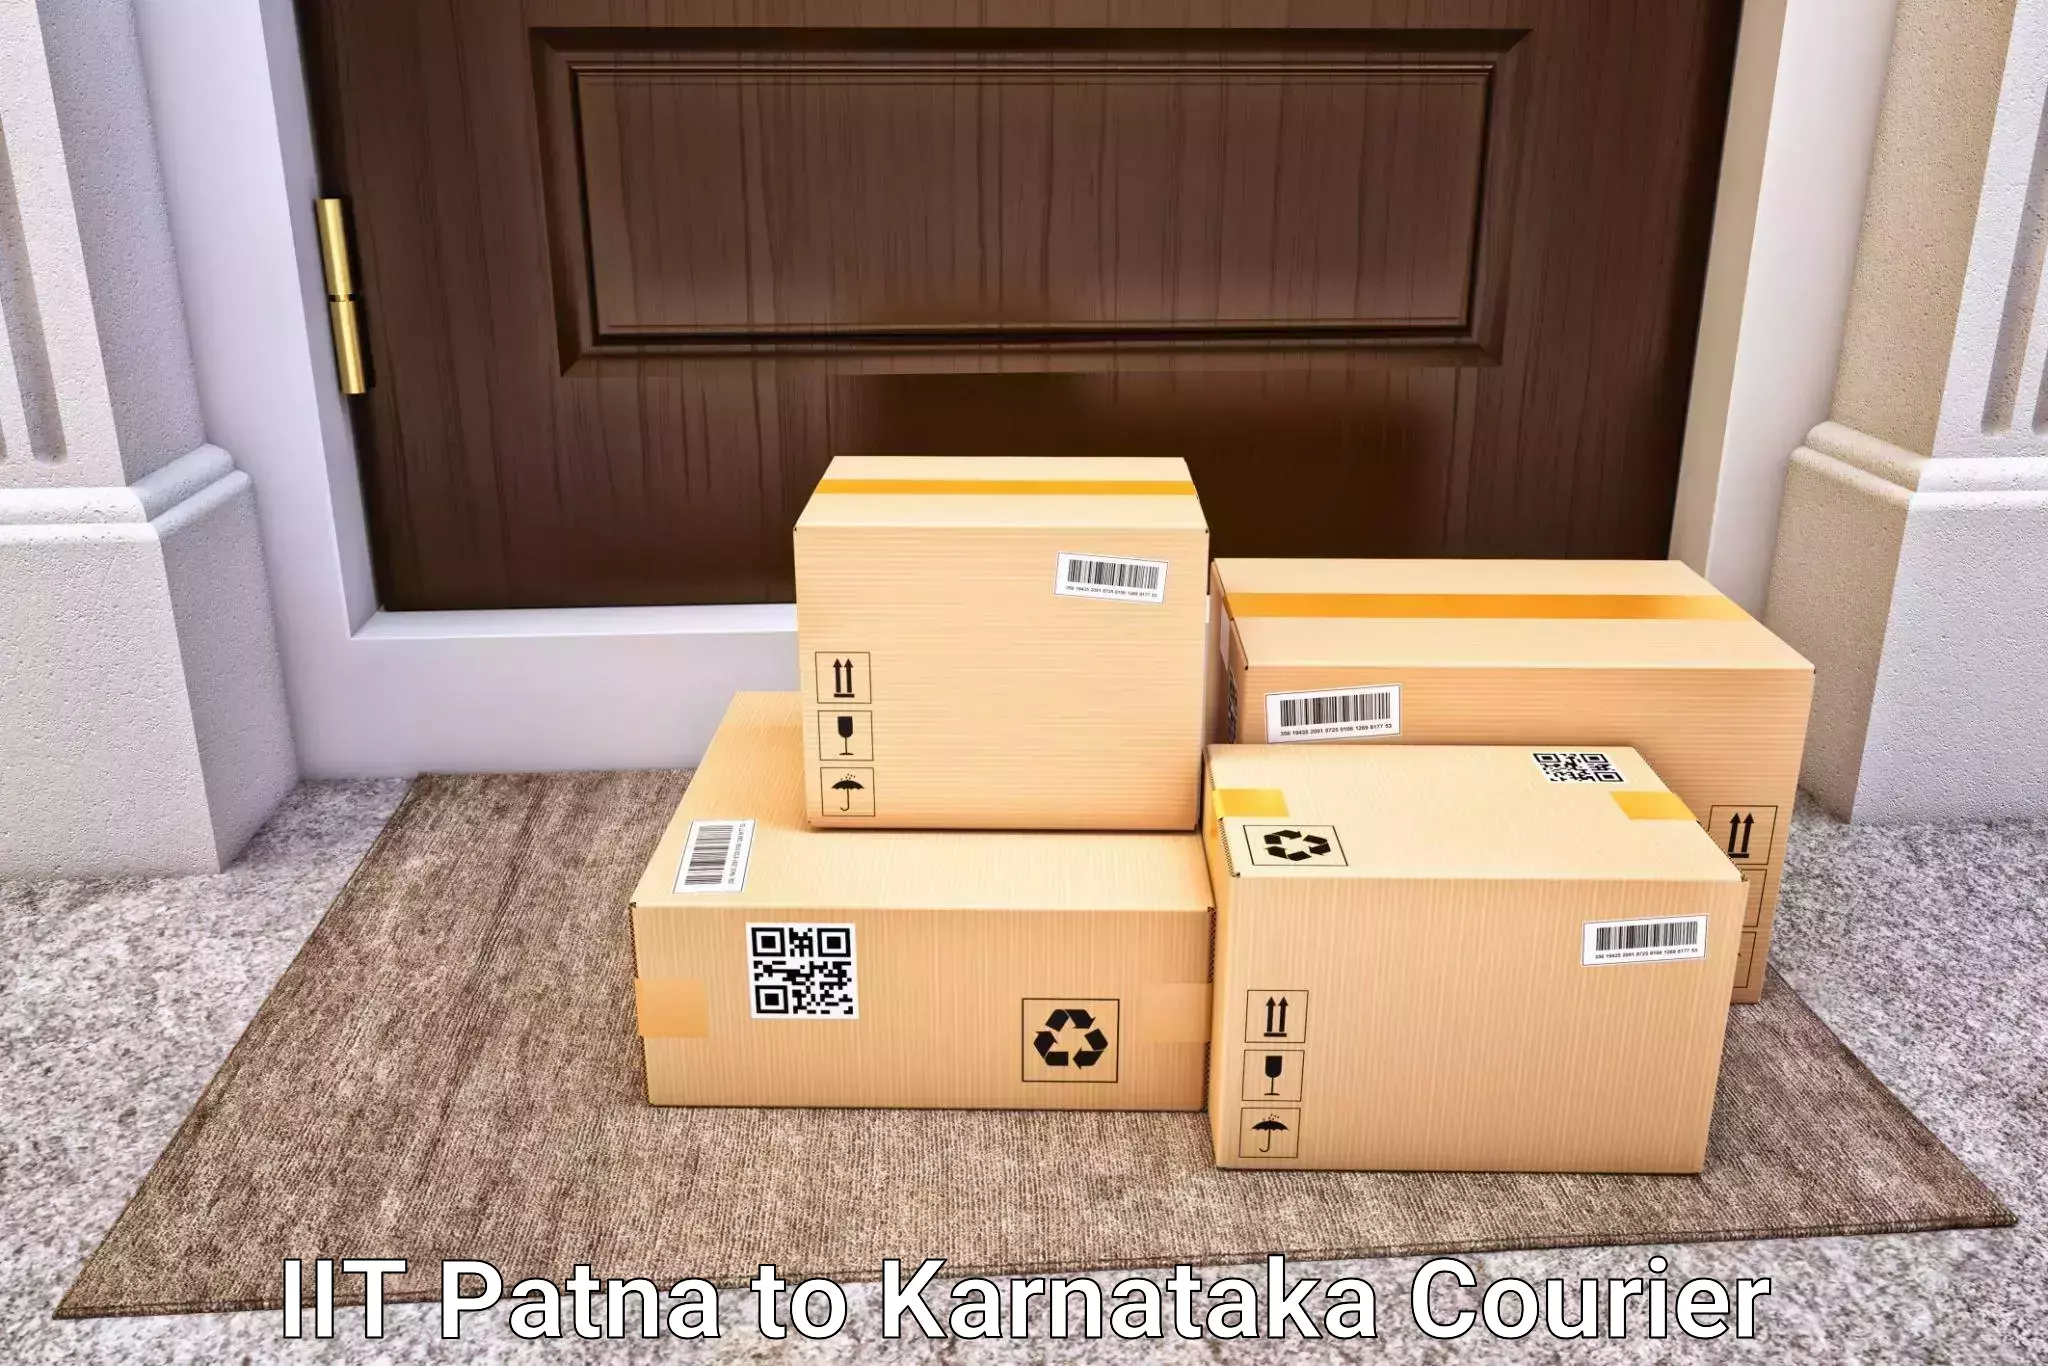 Luggage delivery news IIT Patna to Kalaburagi